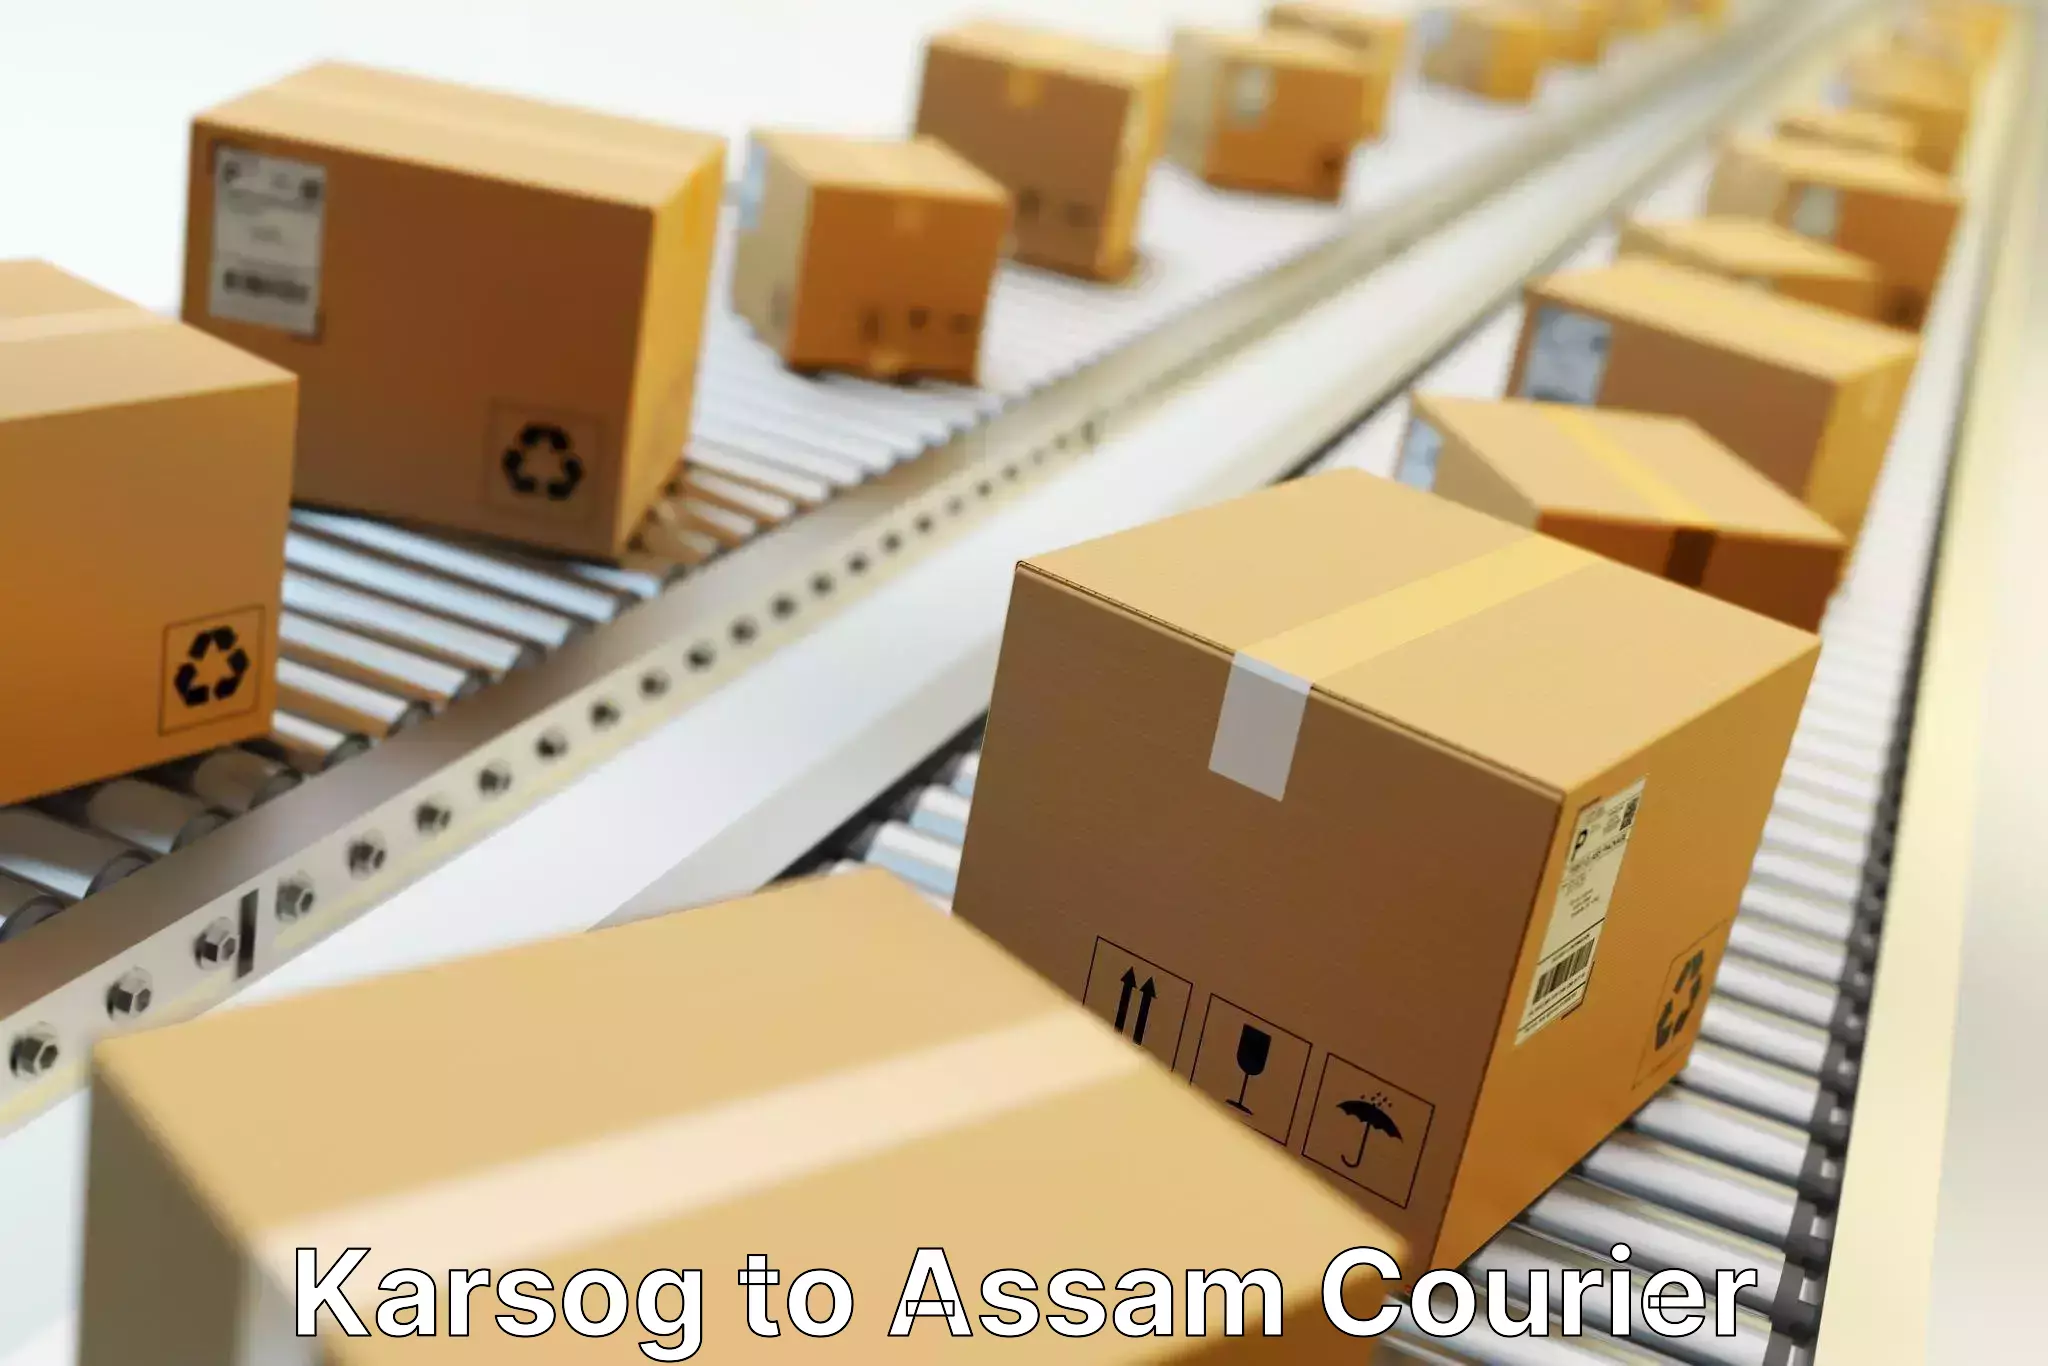 24/7 courier service Karsog to Assam